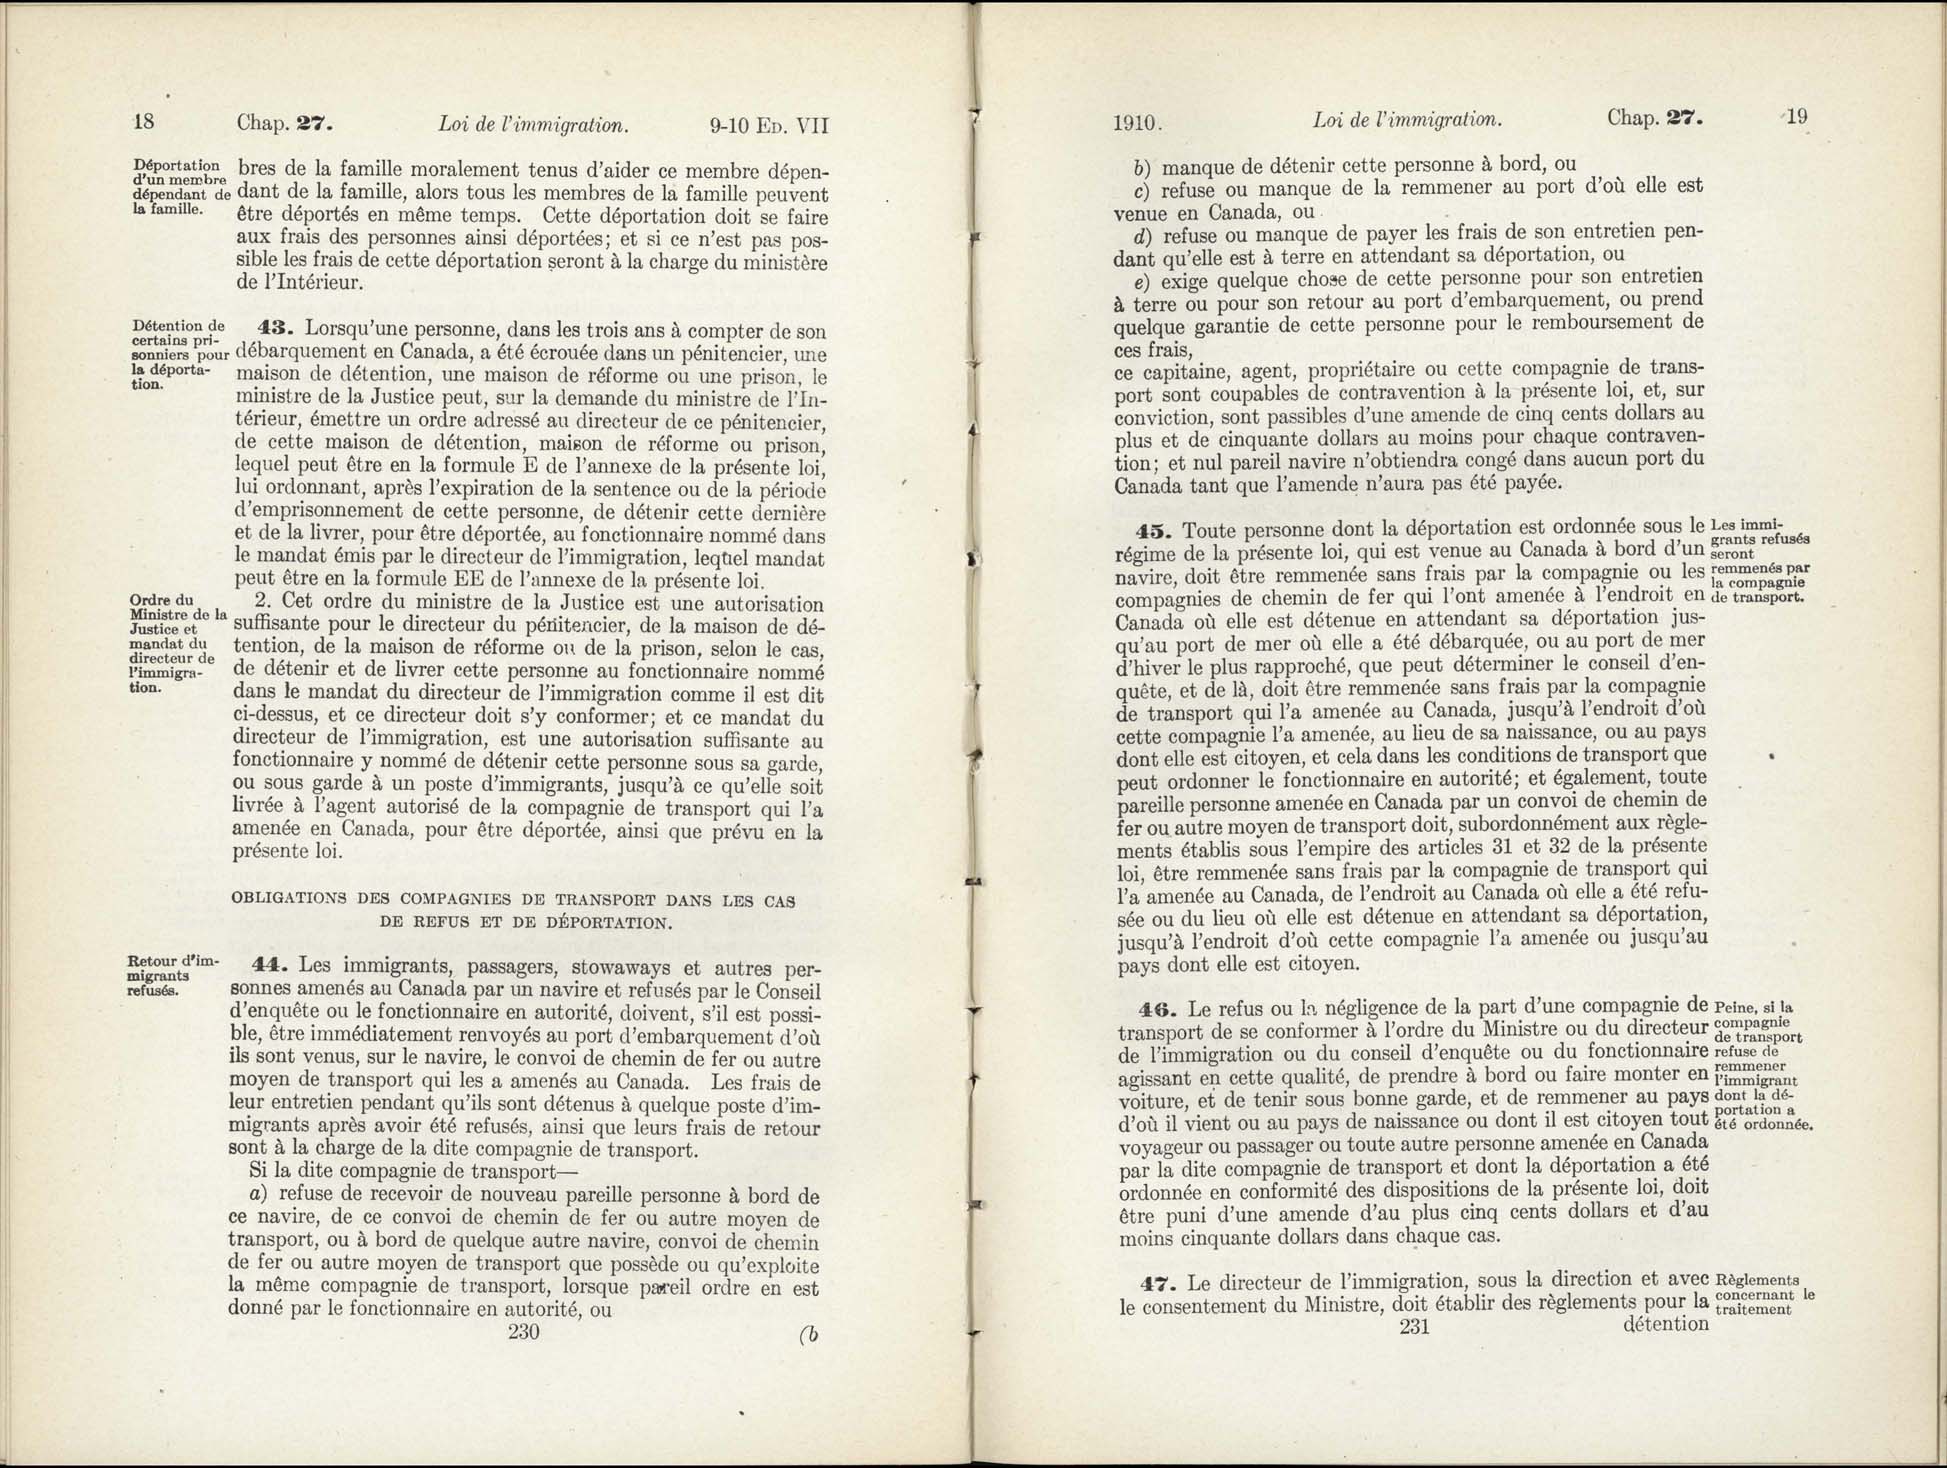 Chap 27 Page 230, 231 L’Acte d’immigration, 1910